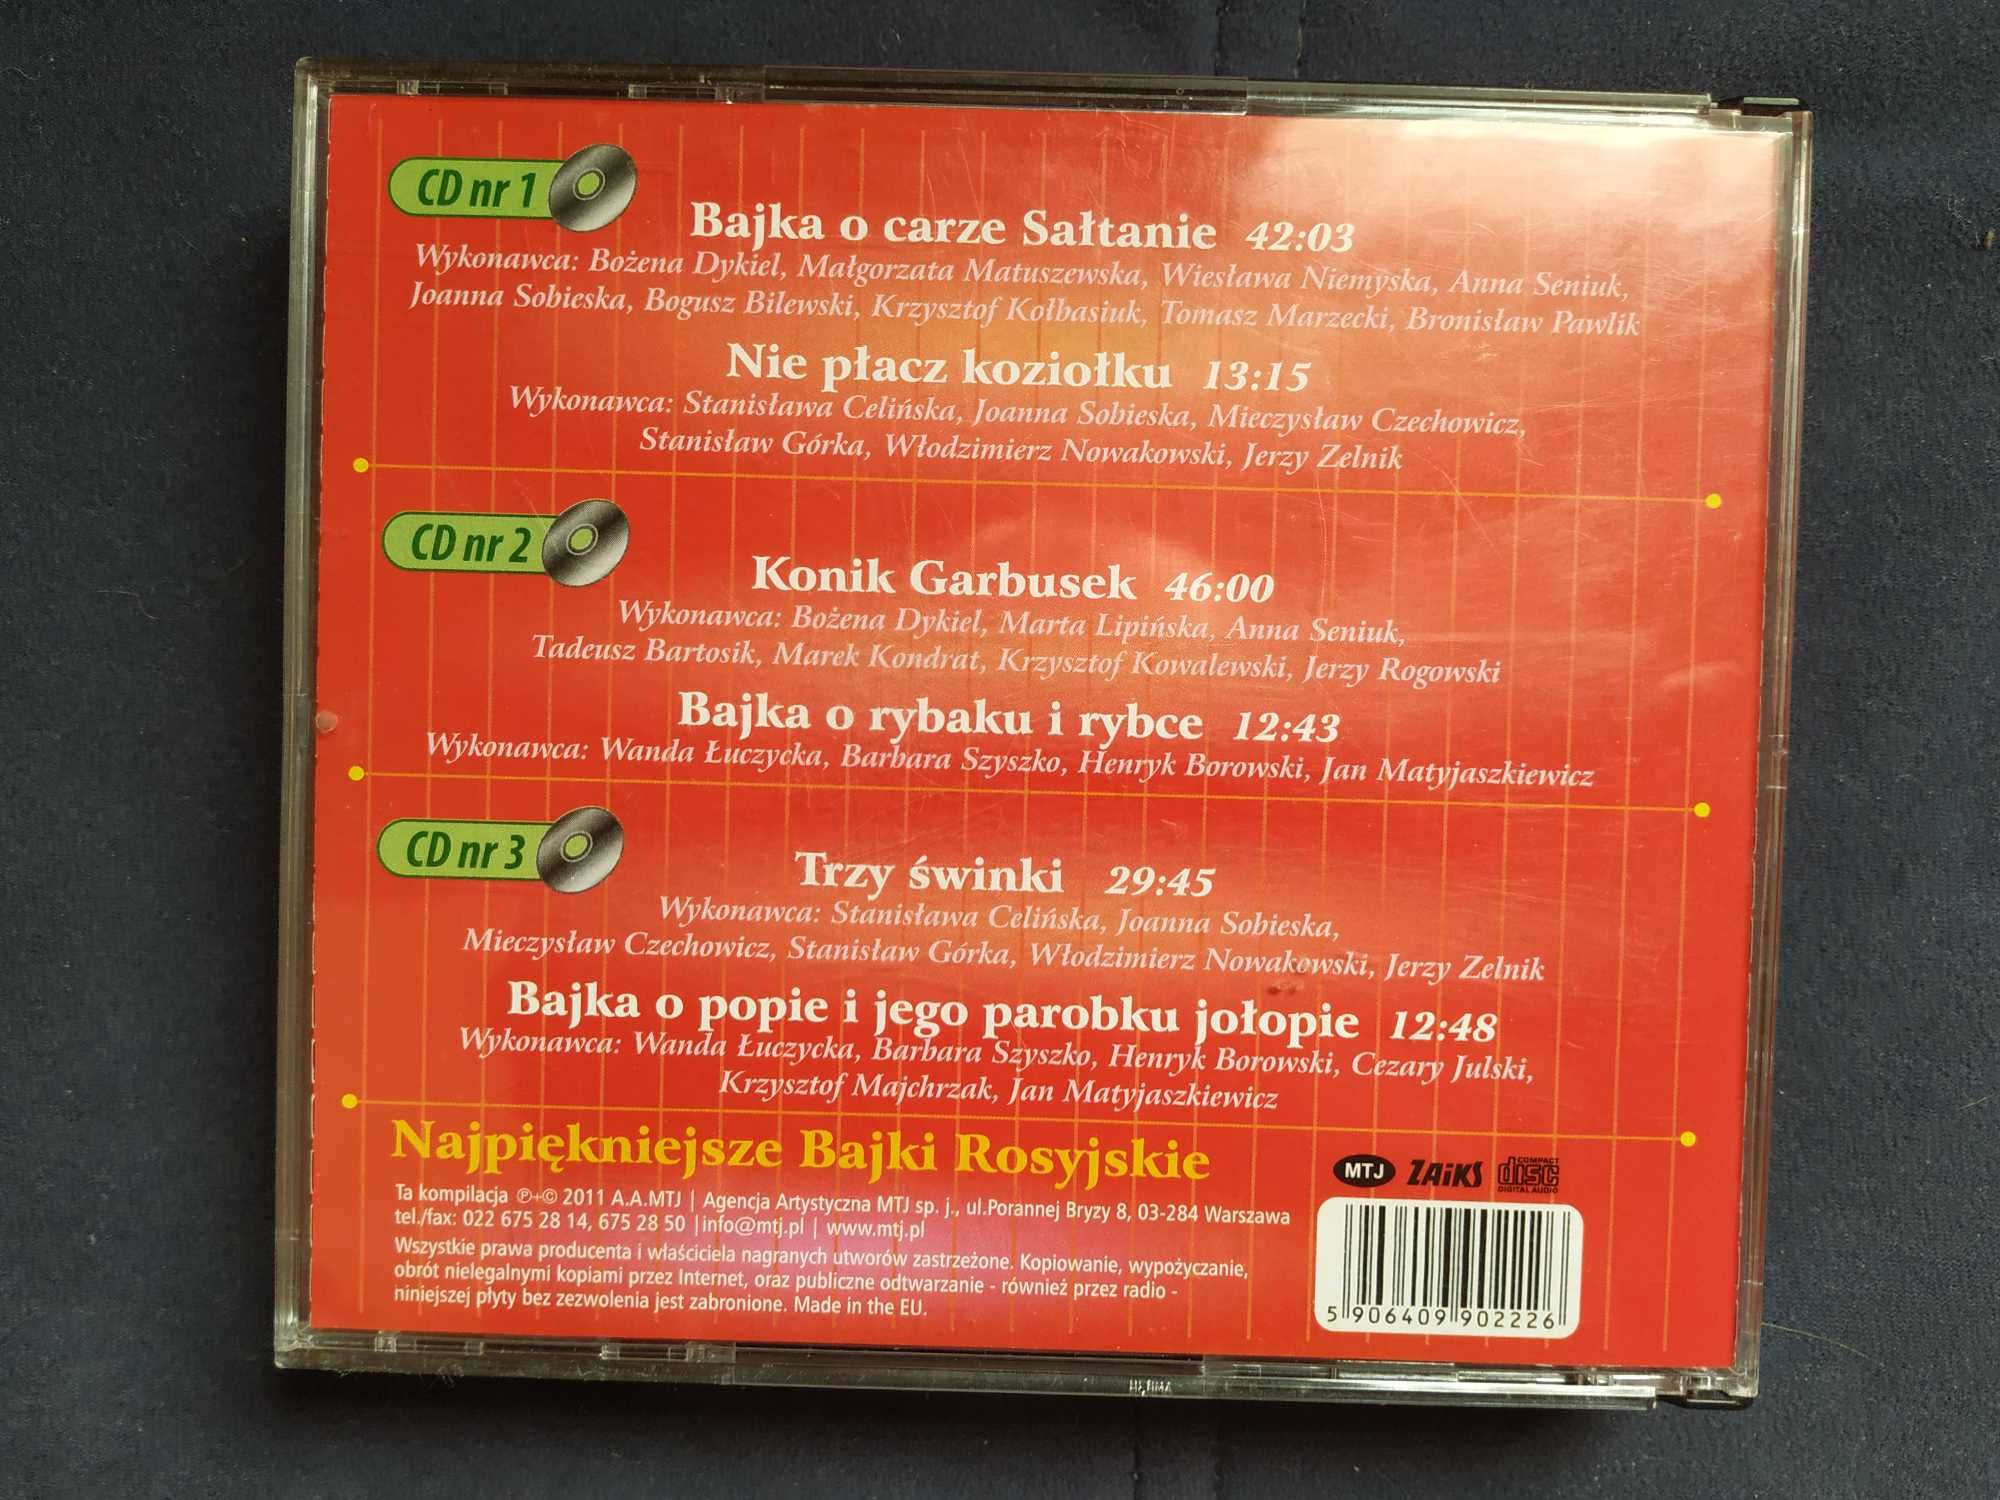 Audiobooki: „Najpiękniejsze Bajki Rosyjskie” na 3 płytach CD